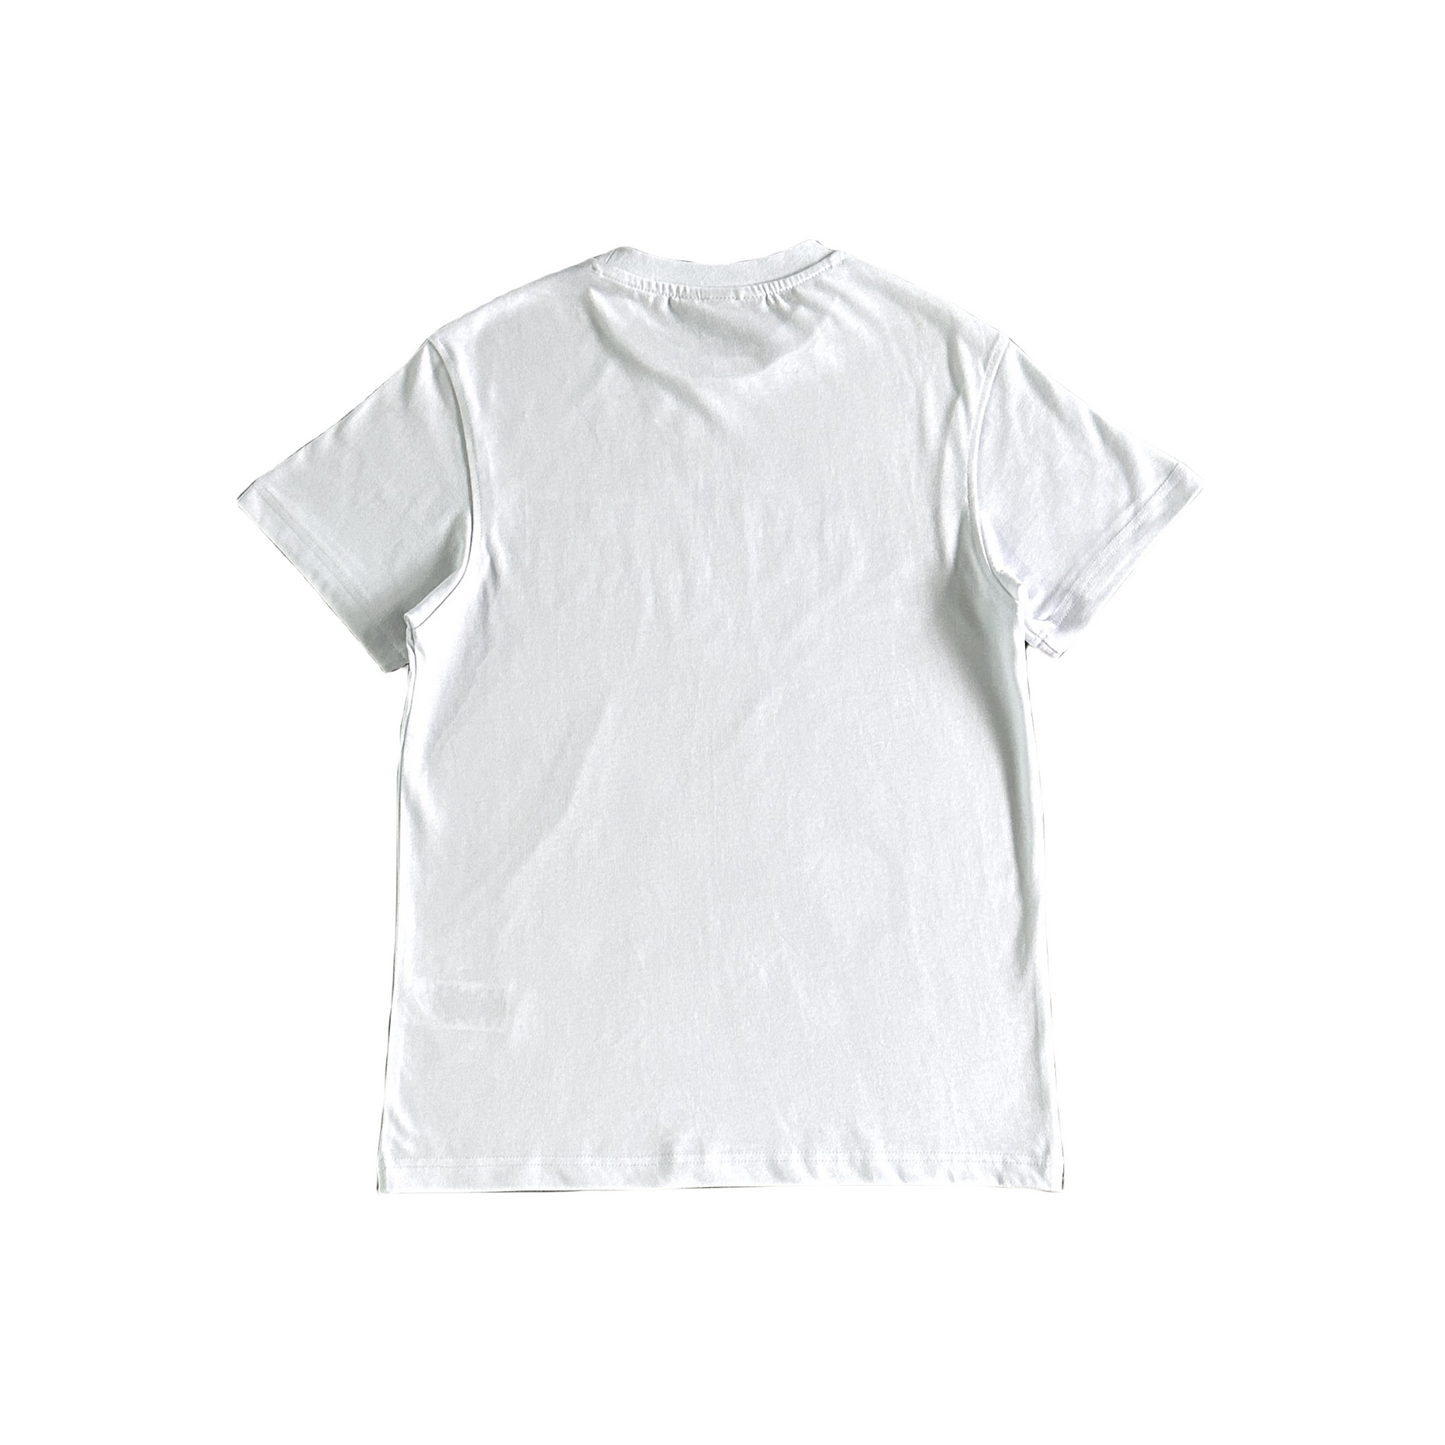 Syna World Plxet Tee Short Sleeve T-shirt - White